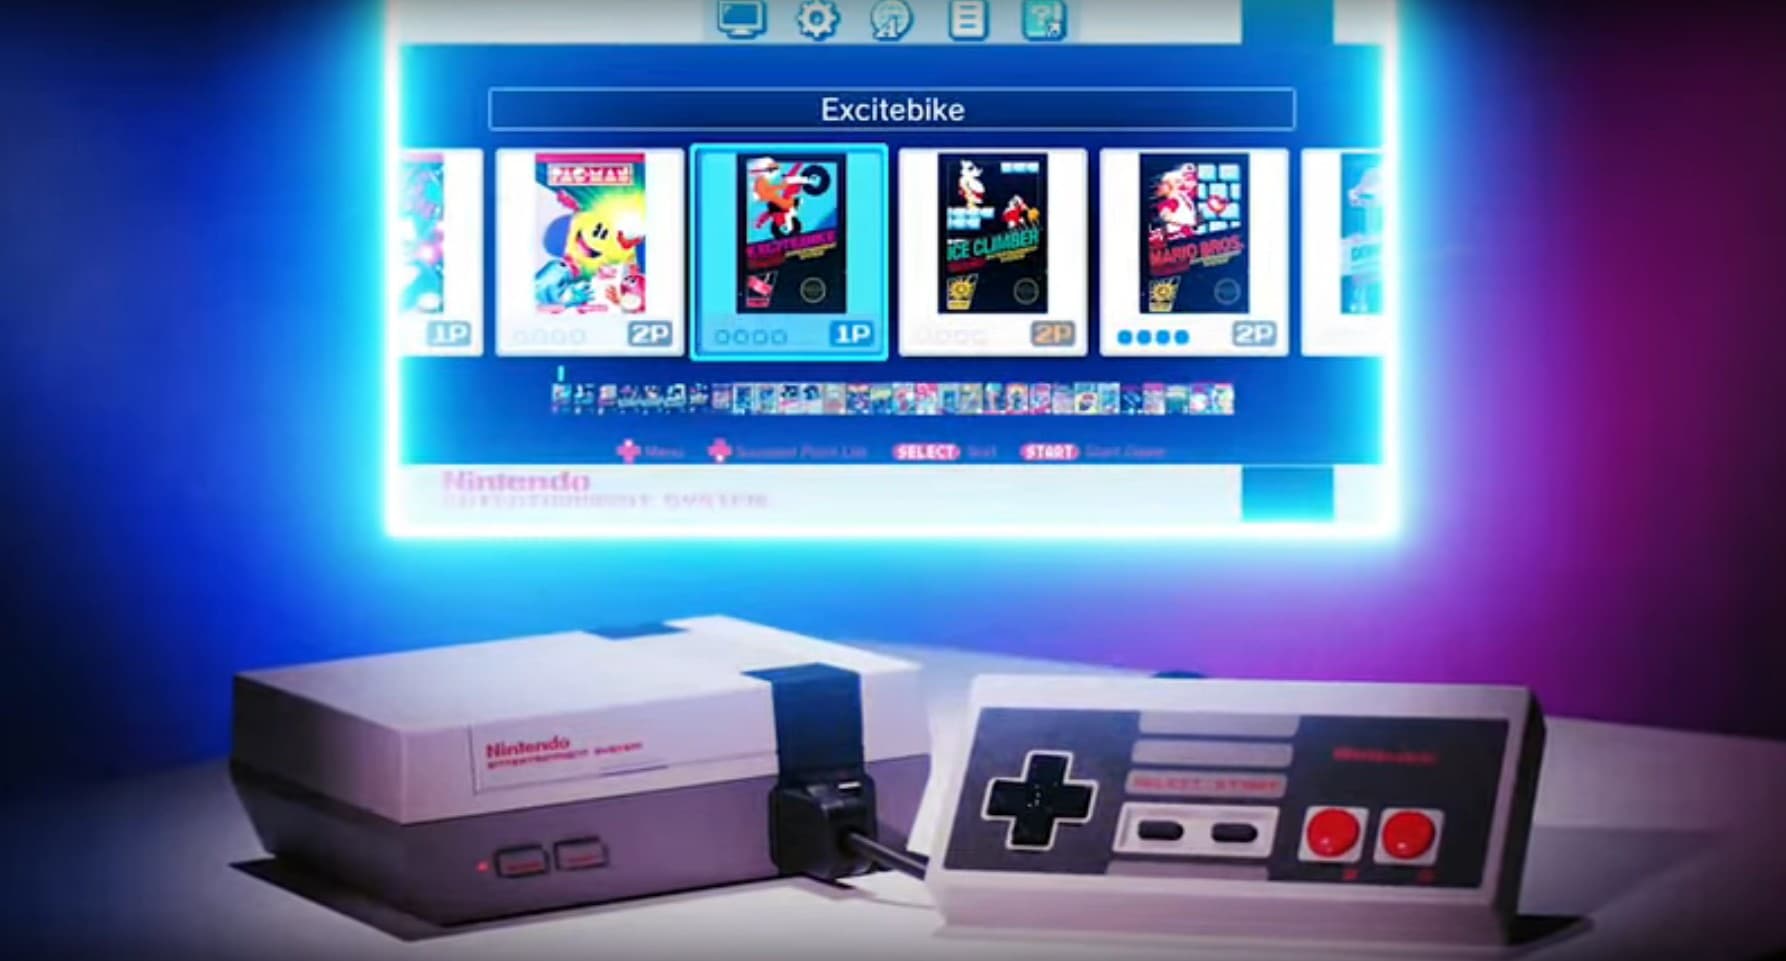 А это NES Classic Edition: умещается на ладони и подключается к современным телевизорам.